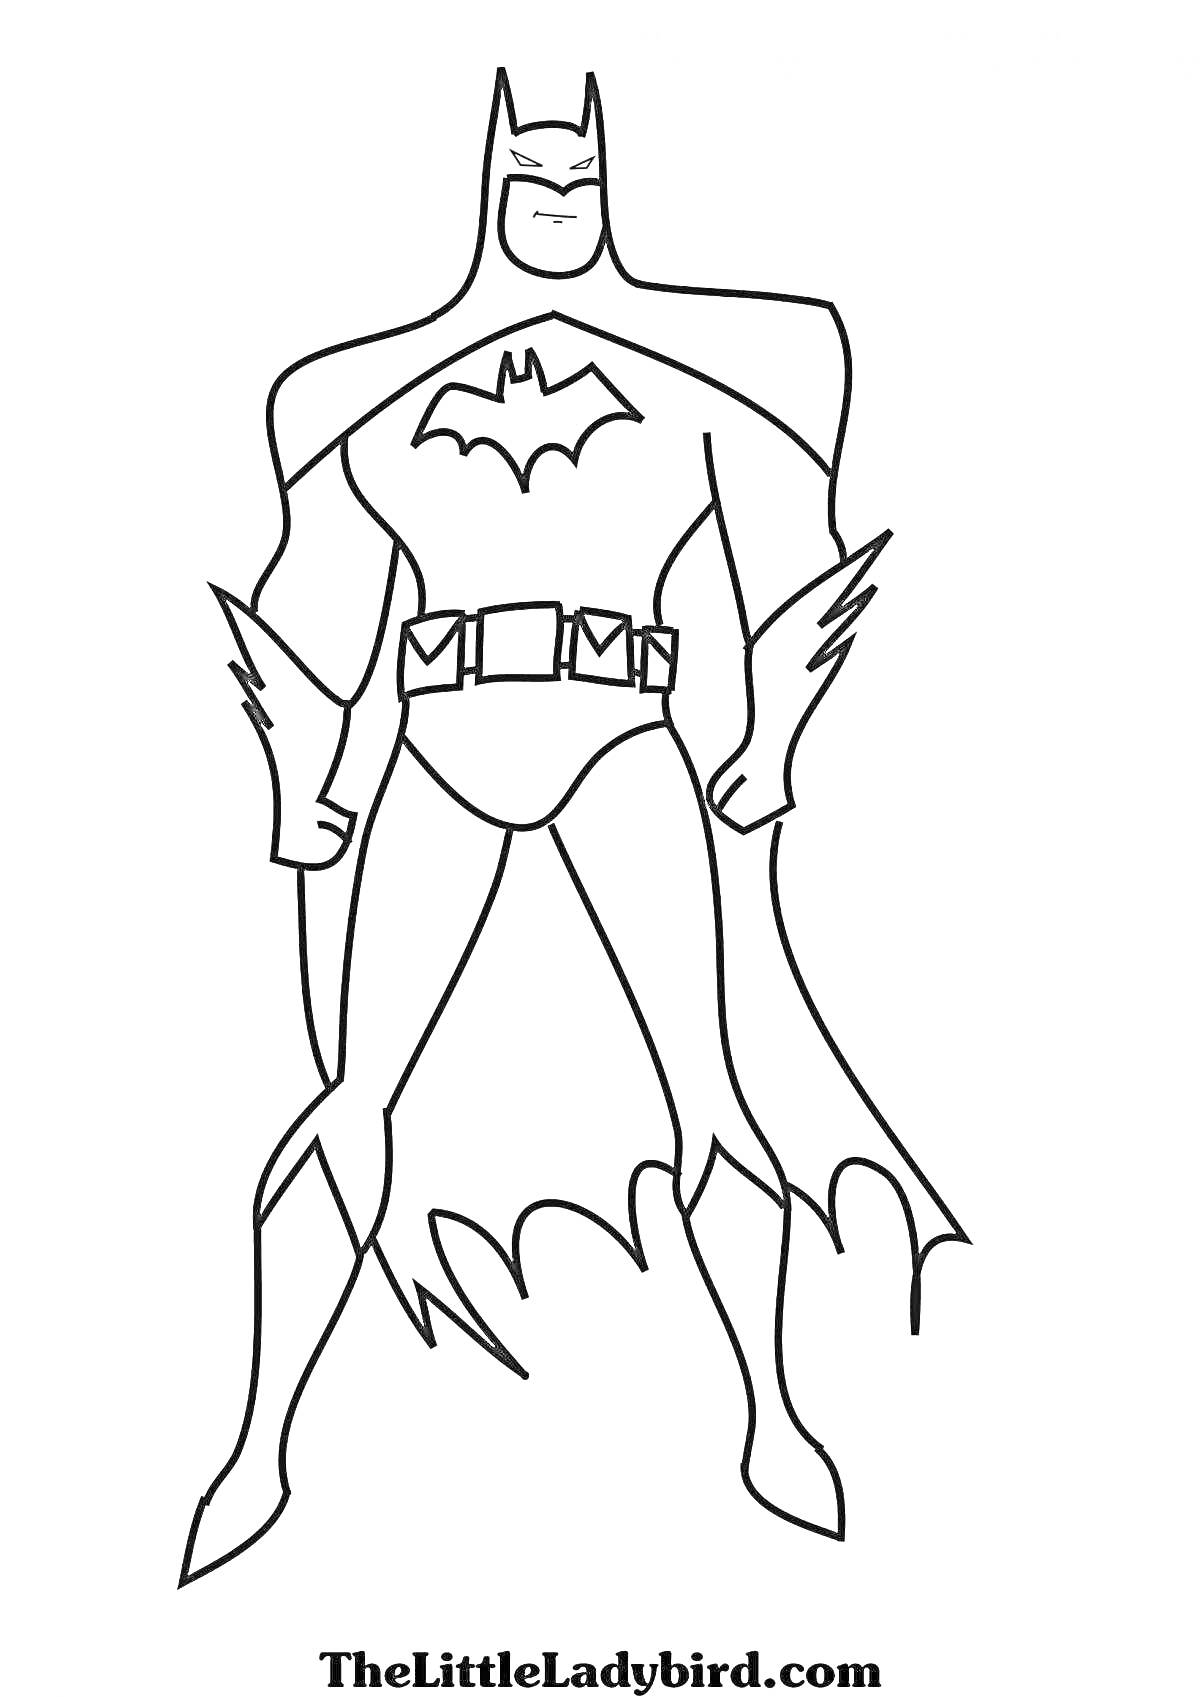 Раскраска Бэтмен в классическом костюме с логотипом летучей мыши, плащом и поясом